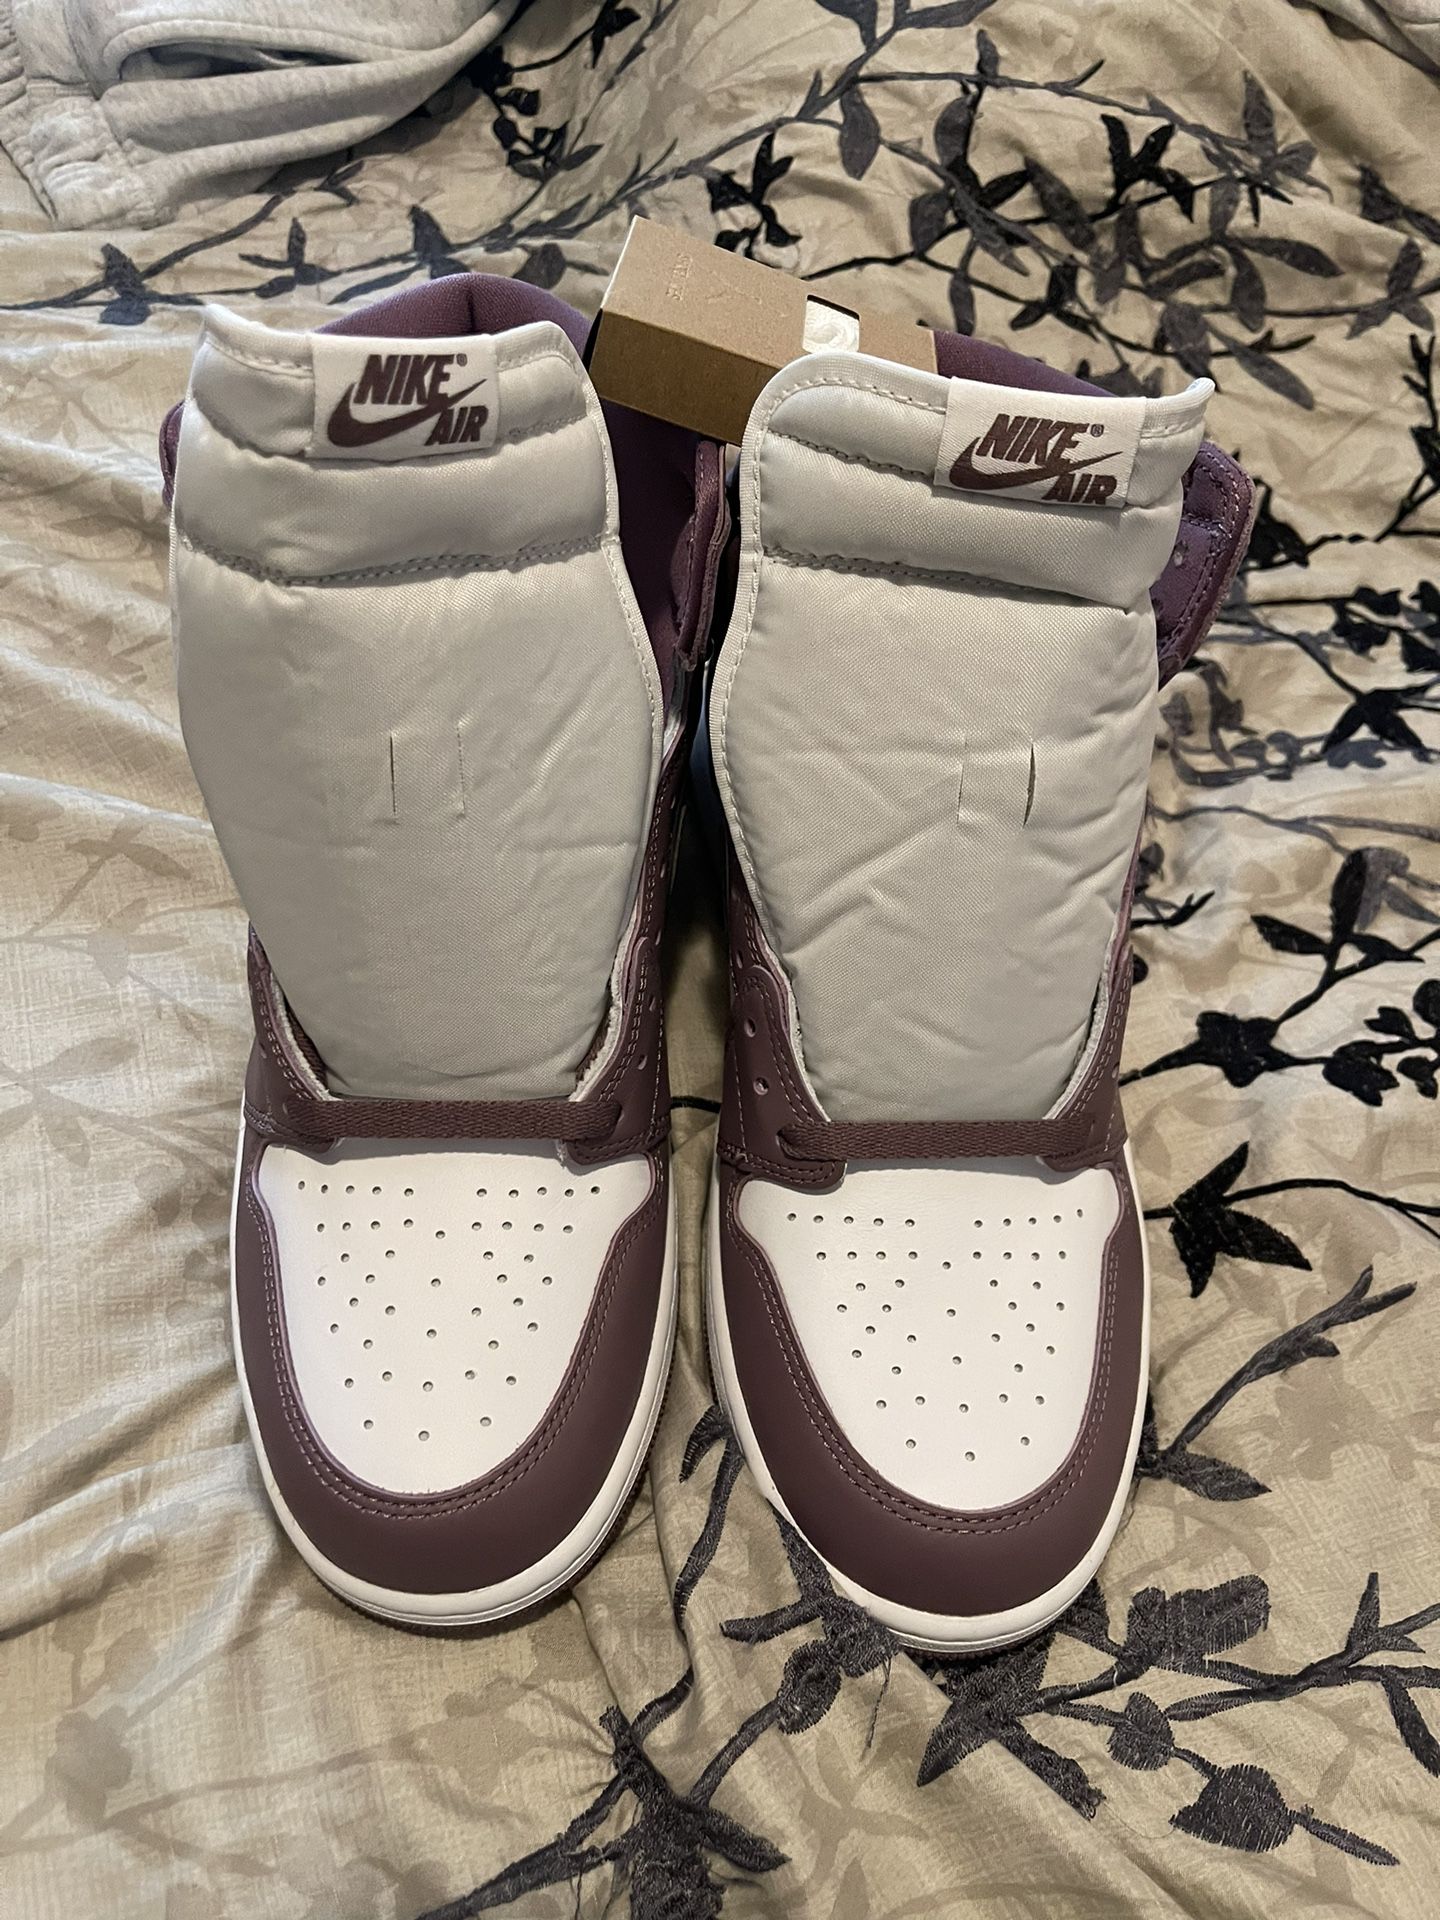 Air Jordan 1 High OG "Mauve" Men's Shoes 2023 Size M 12 / W 13.5